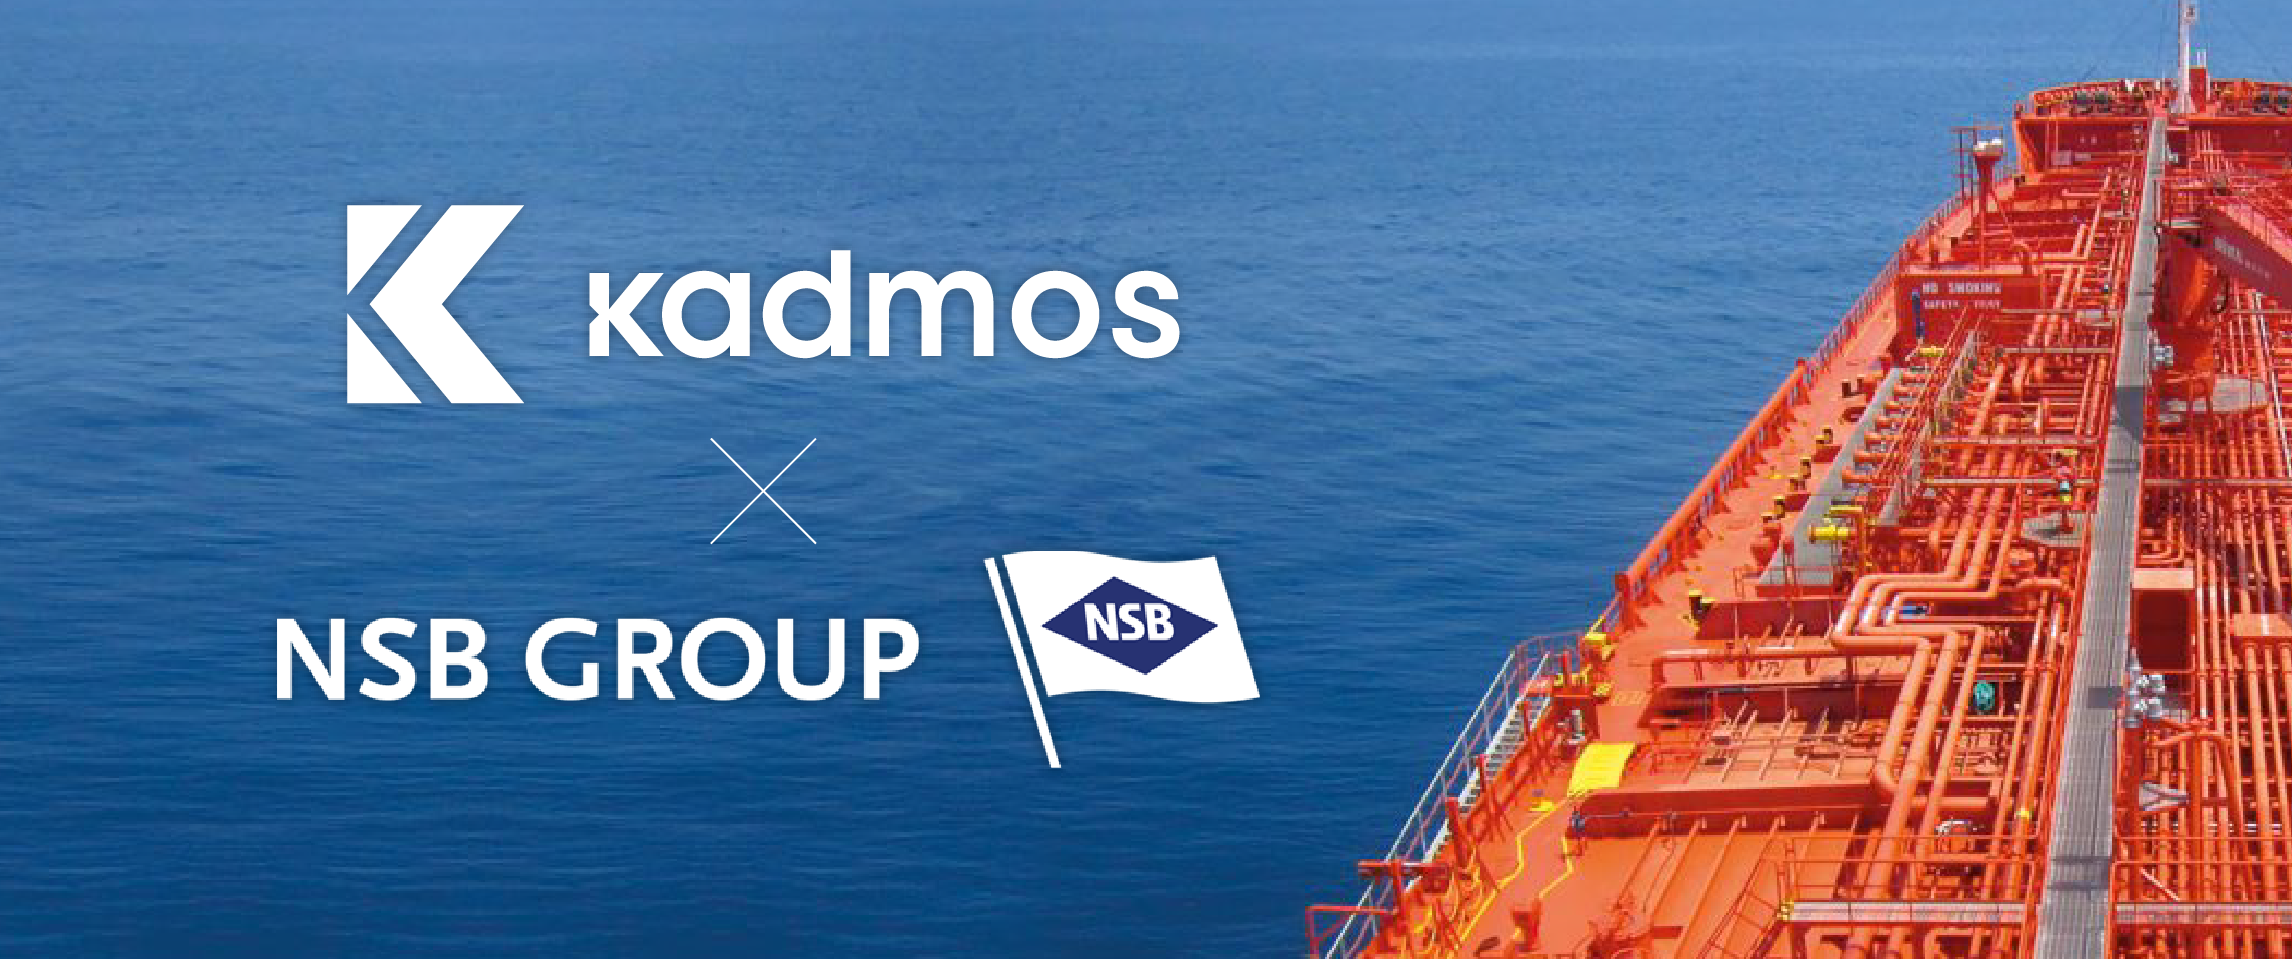 NSB GROUP announces partnership with Kadmos